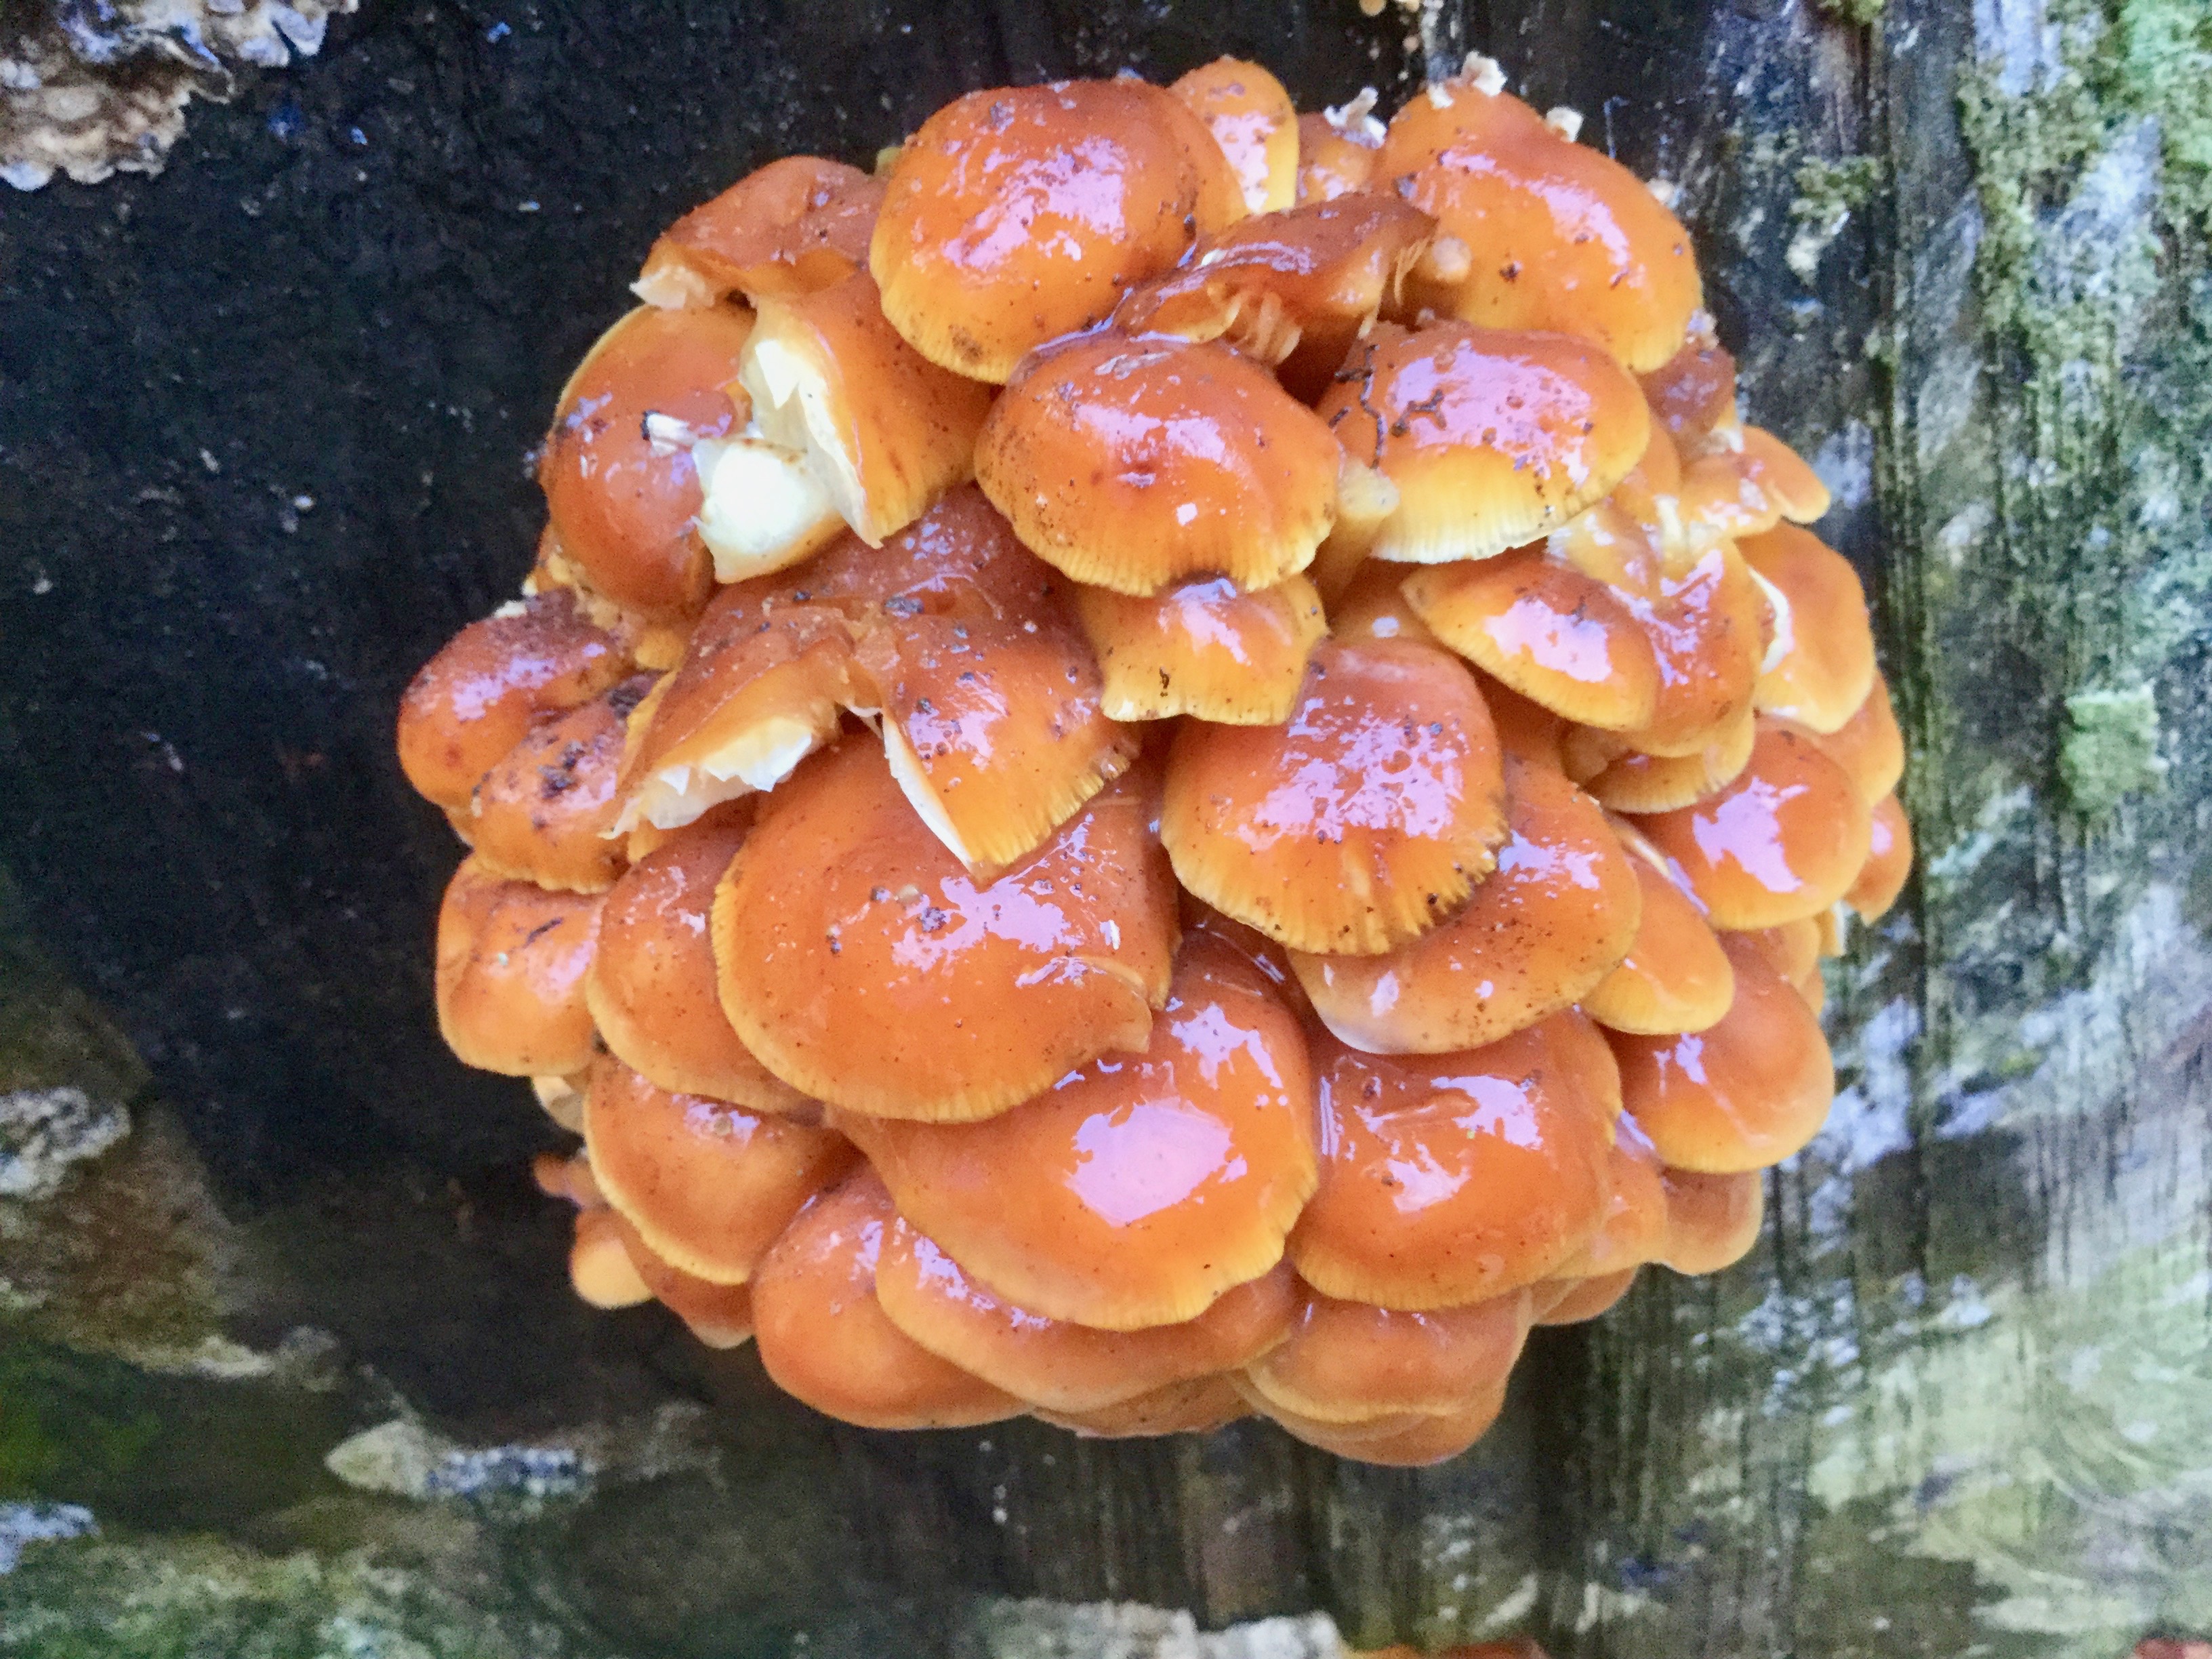 Mortonhall Fungi - 2 Feb 2020 - Photo 60